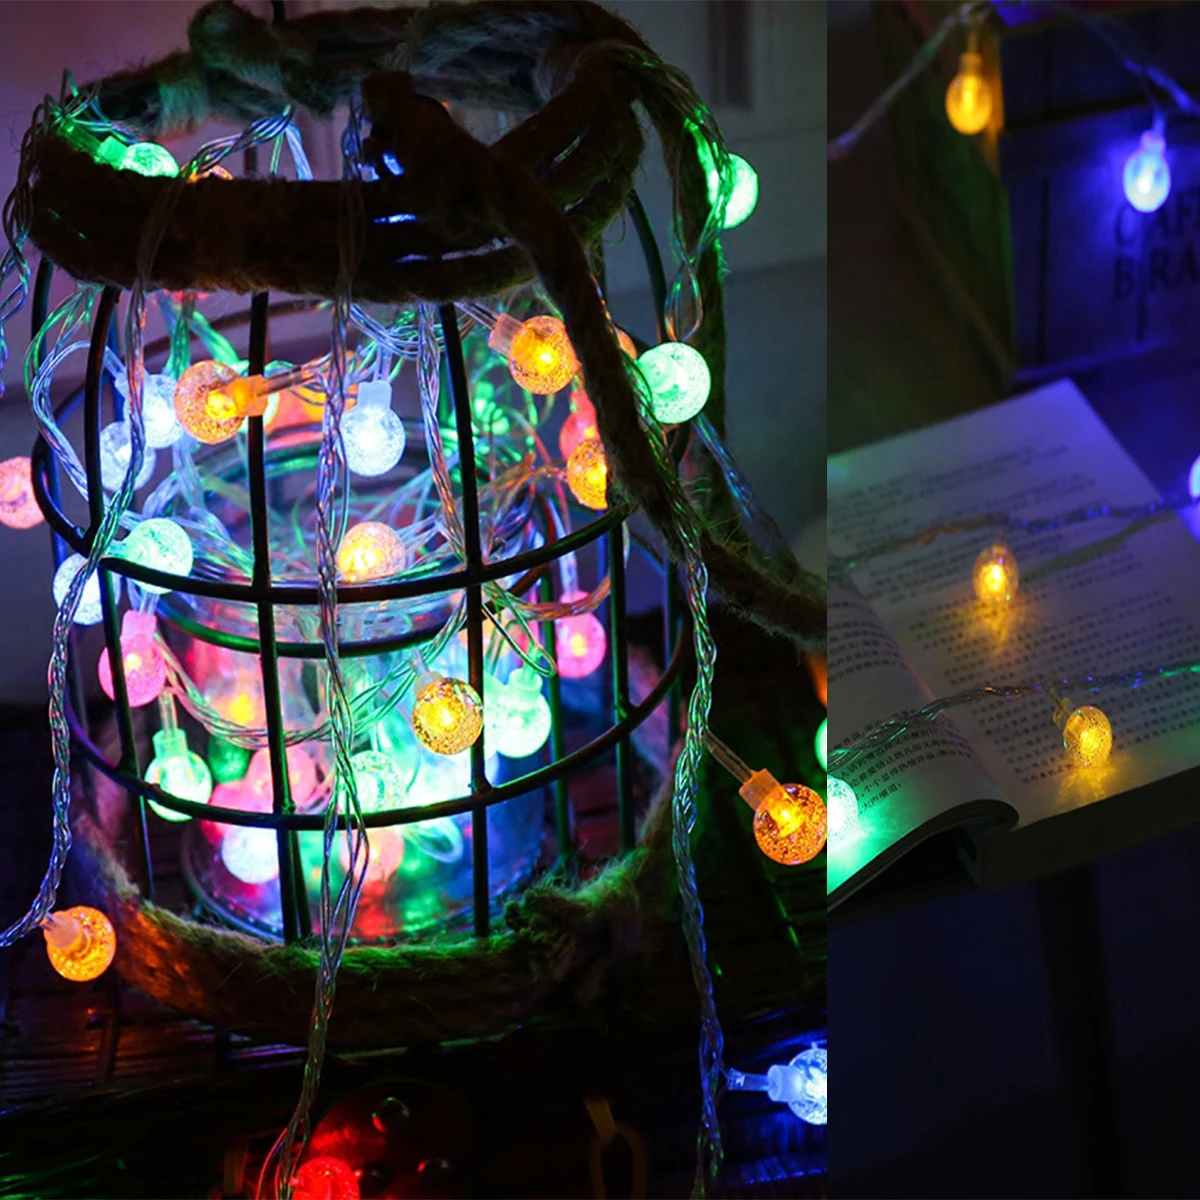 Гирлянда для внутреннего декора 10 м 100 светодиодный шарик сказочная Гирлянда Свет медная проволока светодиодная гирлянда из ламп Us Plug Home